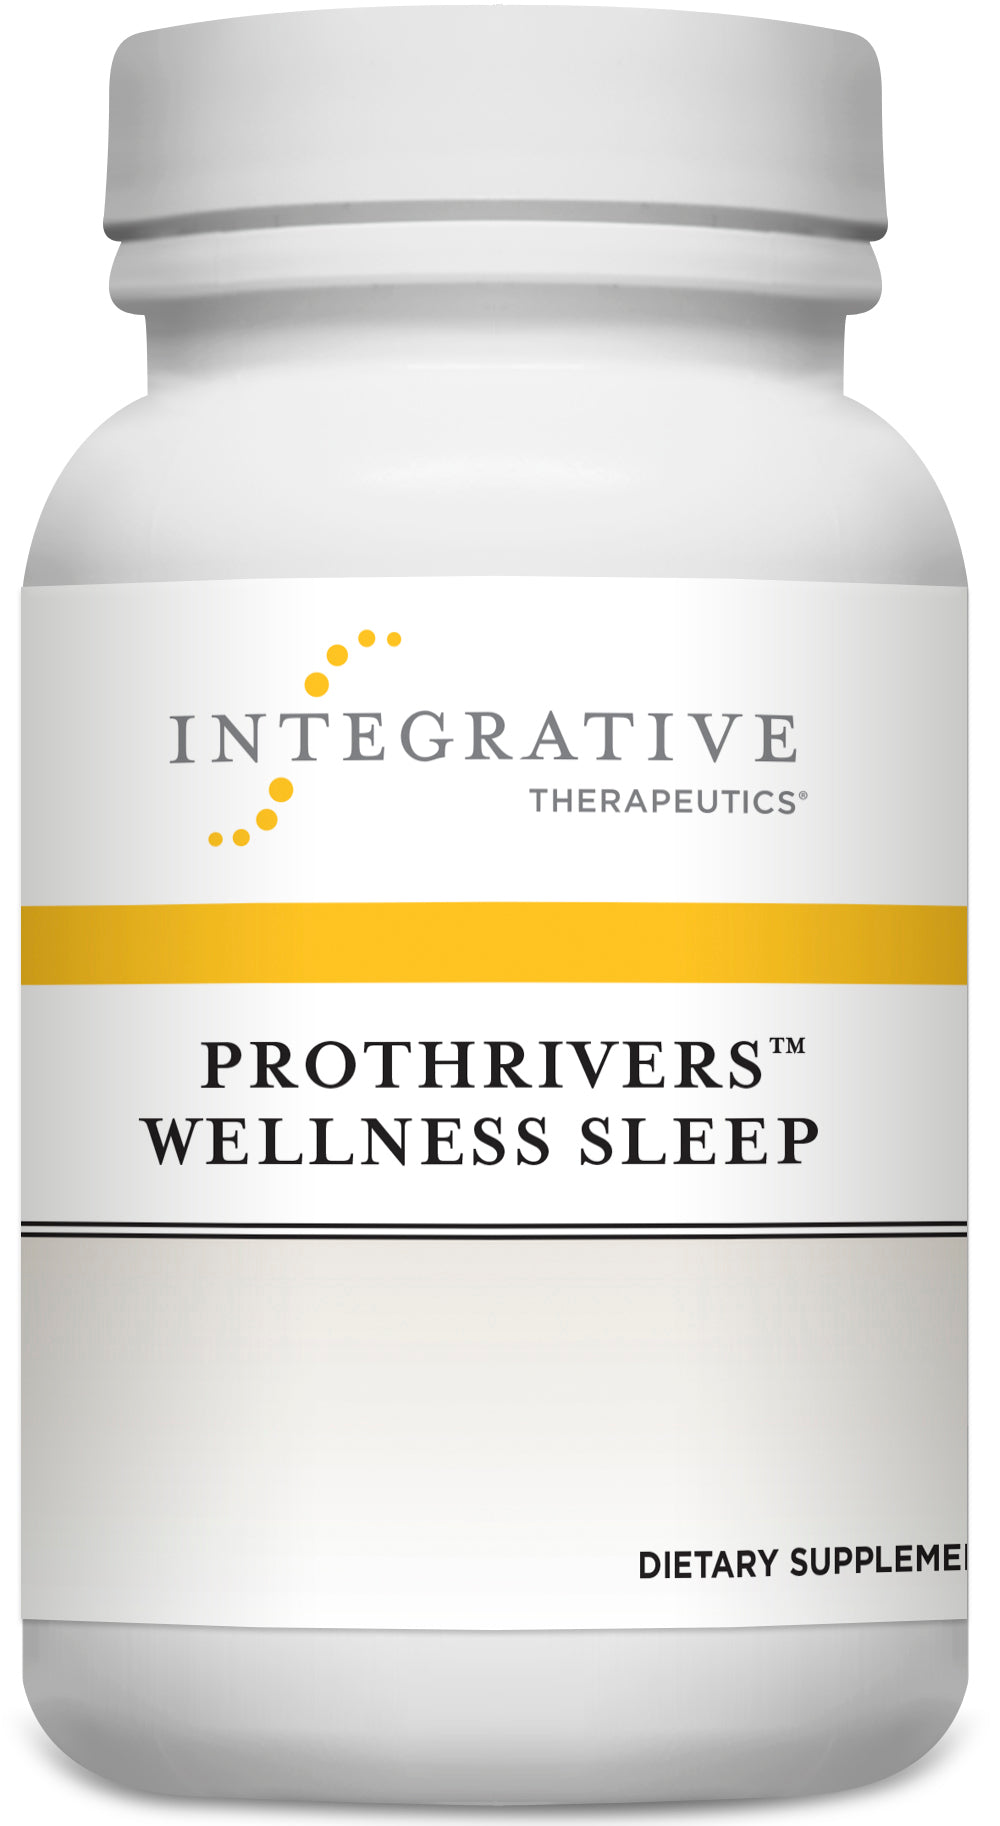 Prothrivers™ Wellness Sleep